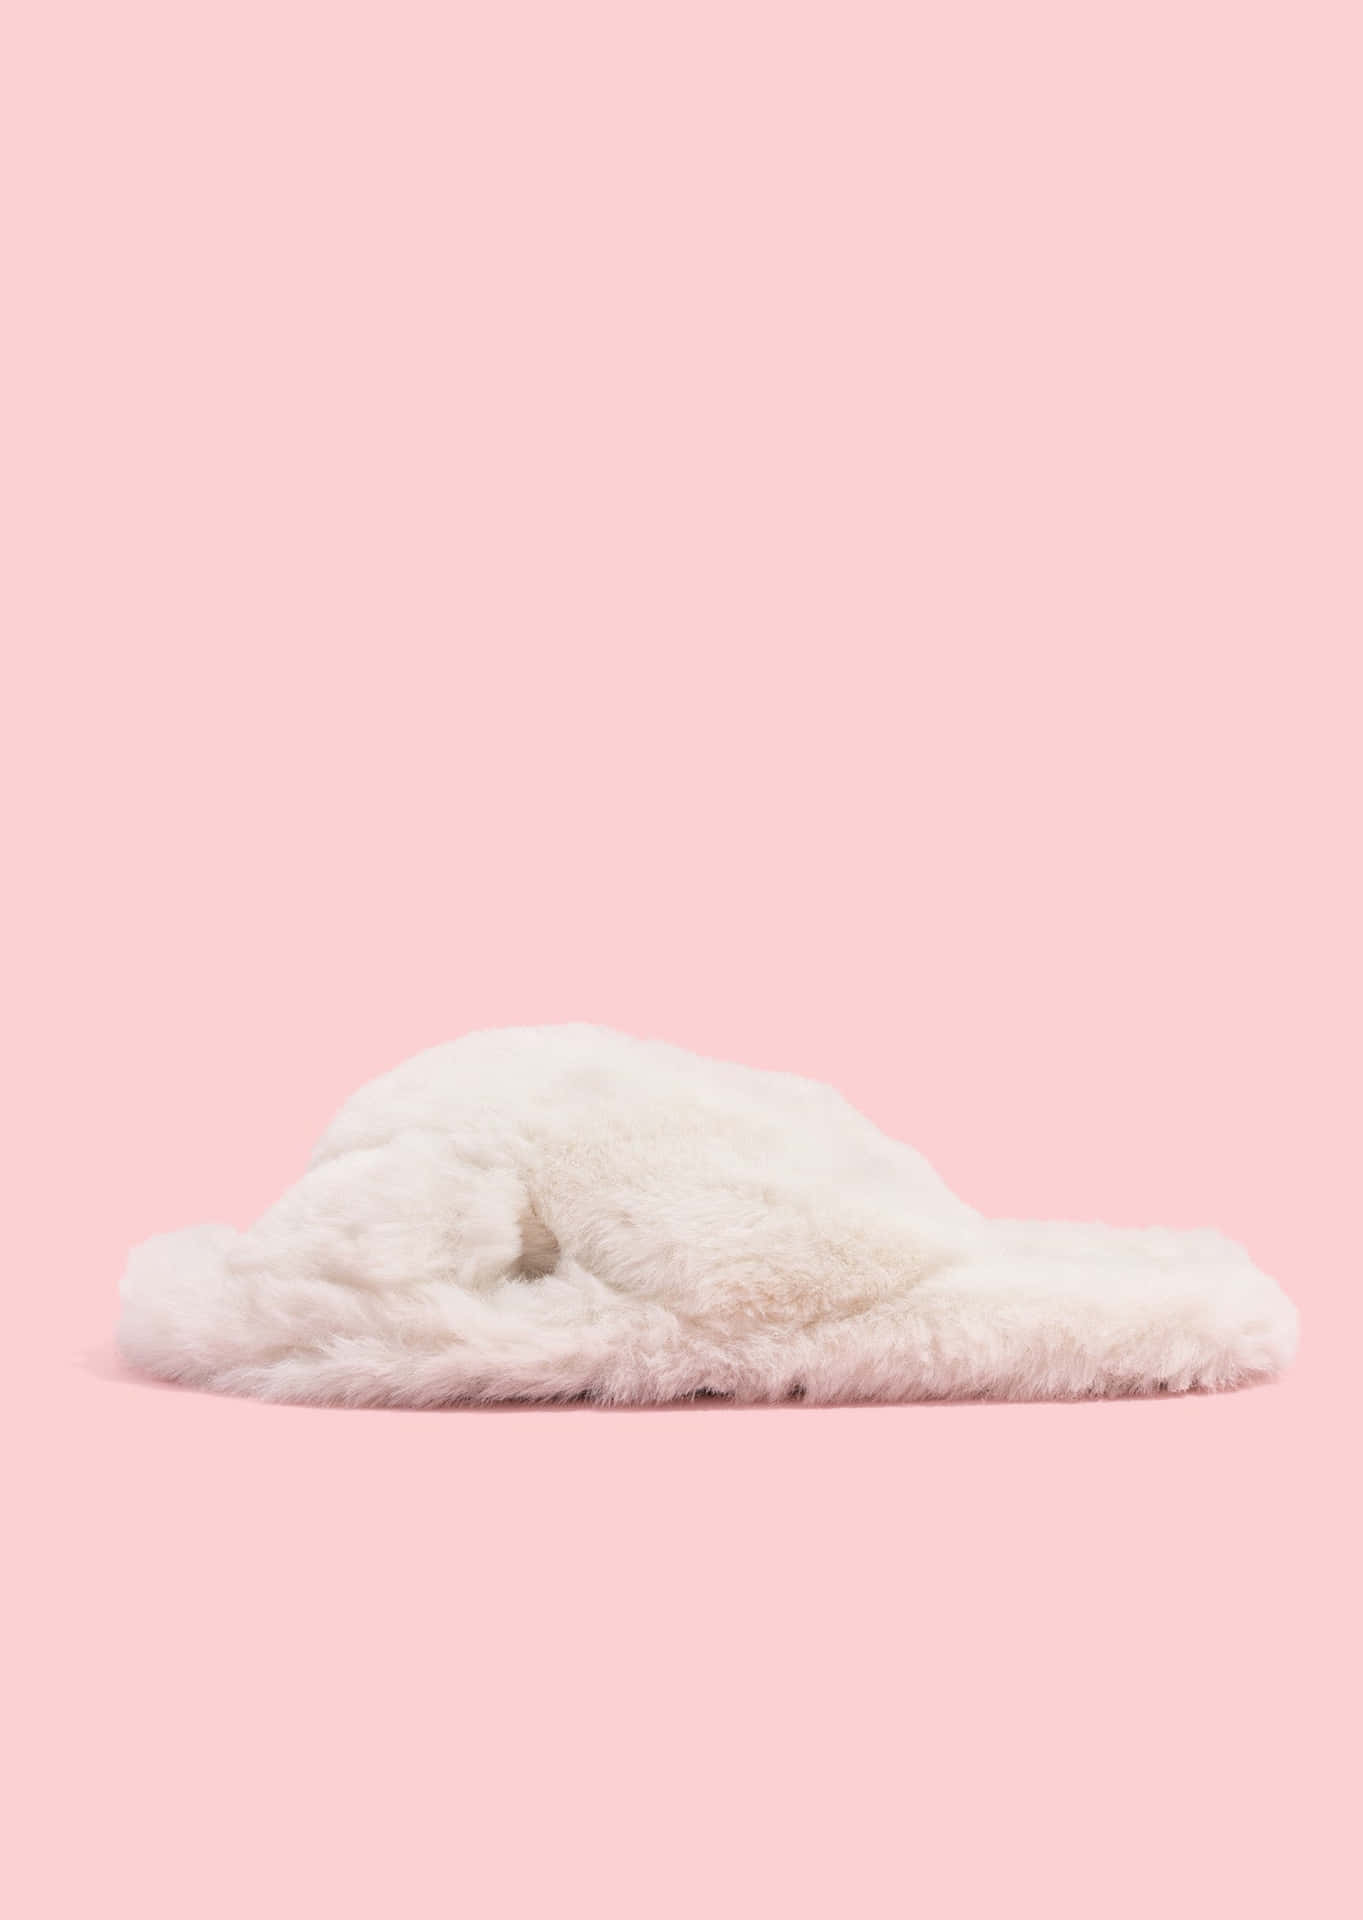 Fluffy White Slipperon Pink Background.jpg Wallpaper